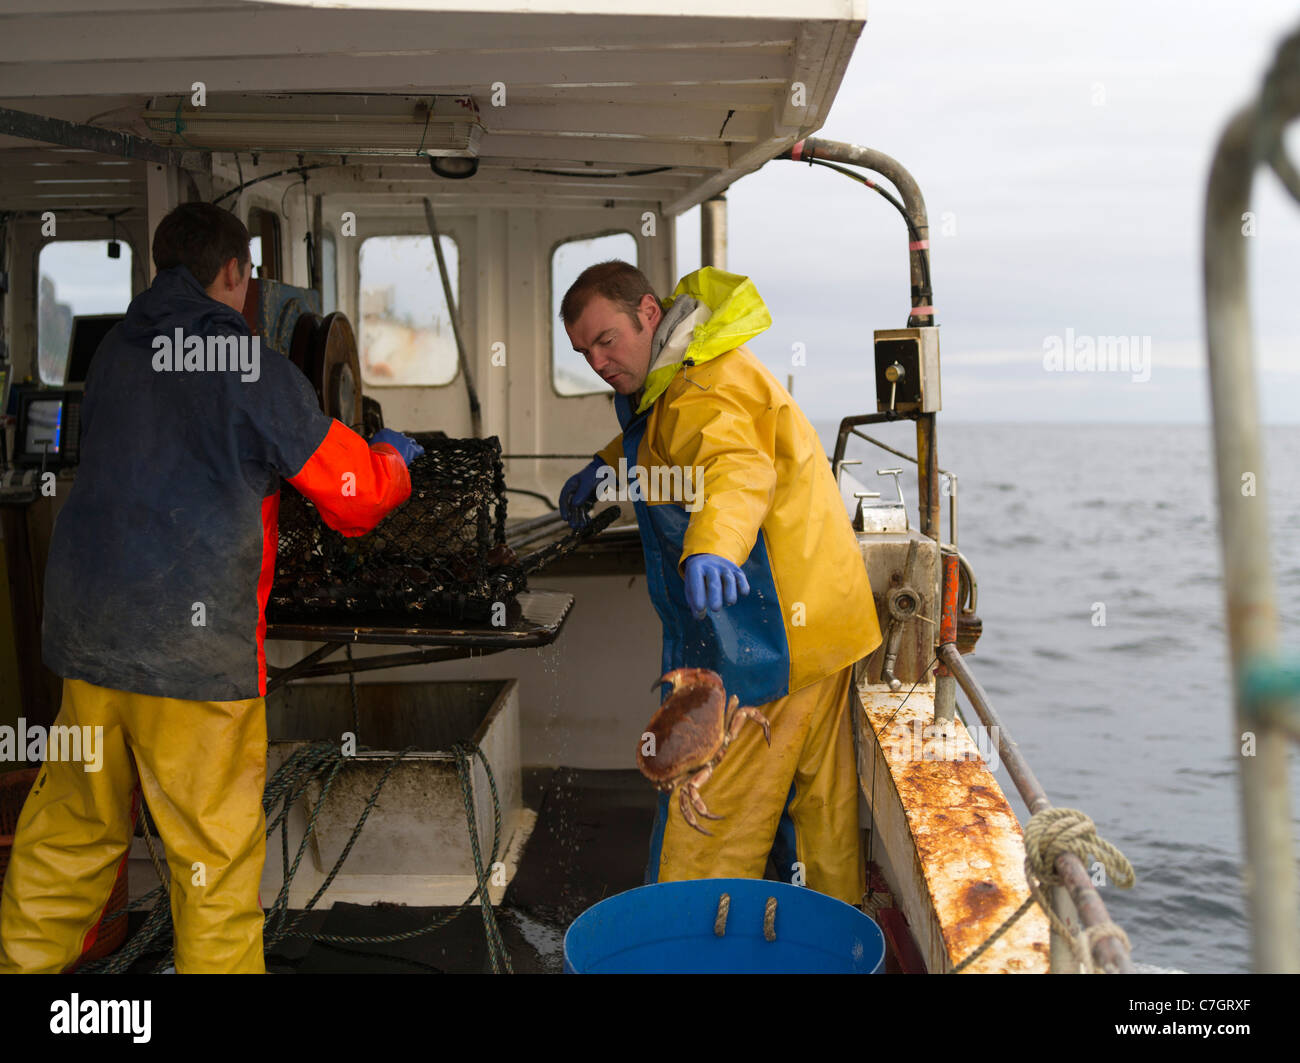 dh pescadores de langosta BARCO DE PESCA ORKNEY ESCOCIA seleccionar cangrejo de creel a bordo del pescador local reino unido Foto de stock